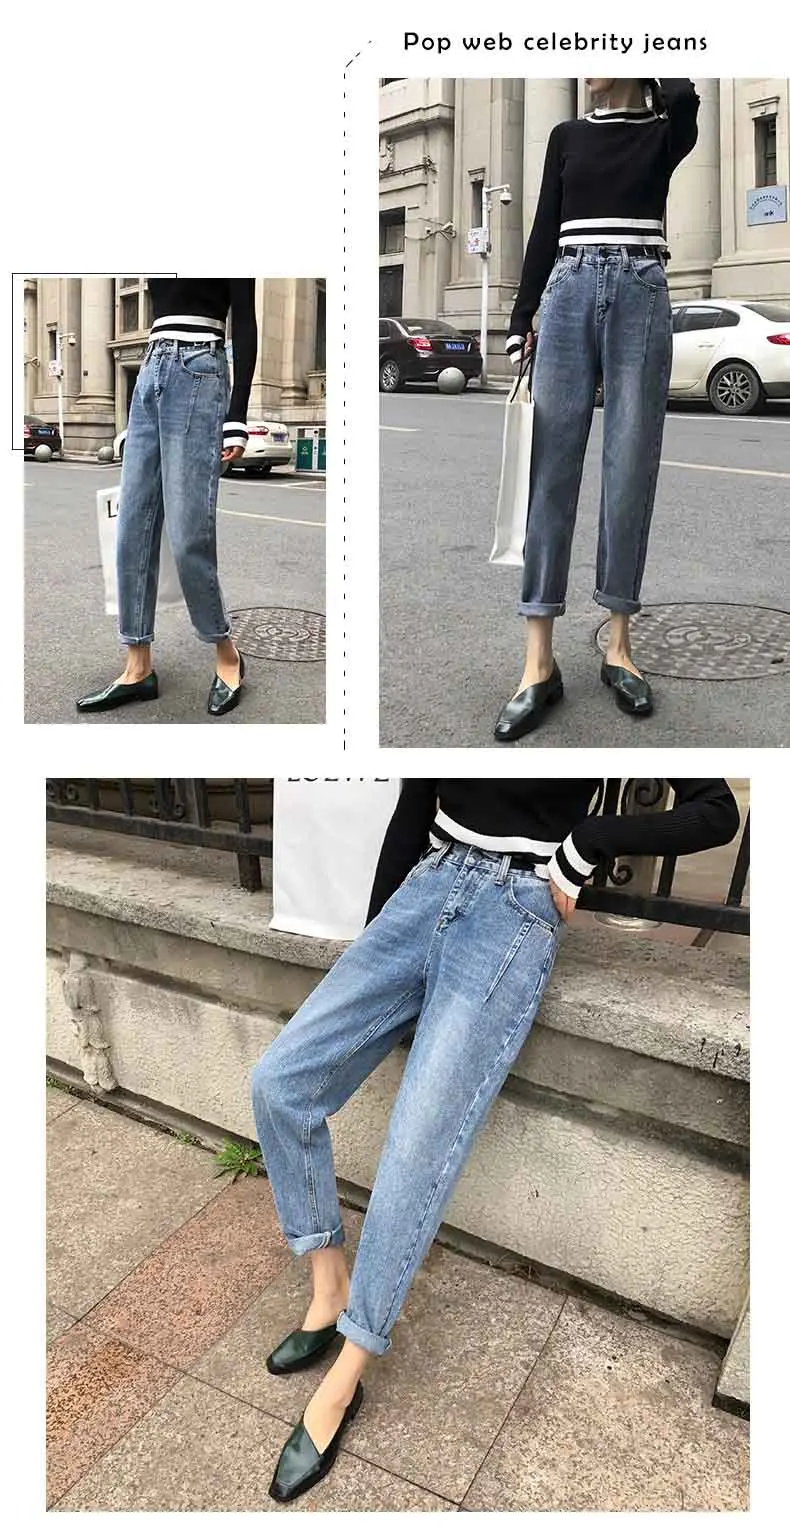 Демисезонный Для женщин джинсы Харлан ветер прямые девять очков Высокая Талия Джинсы женские свободные брюки в ковбойском стиле; одежда